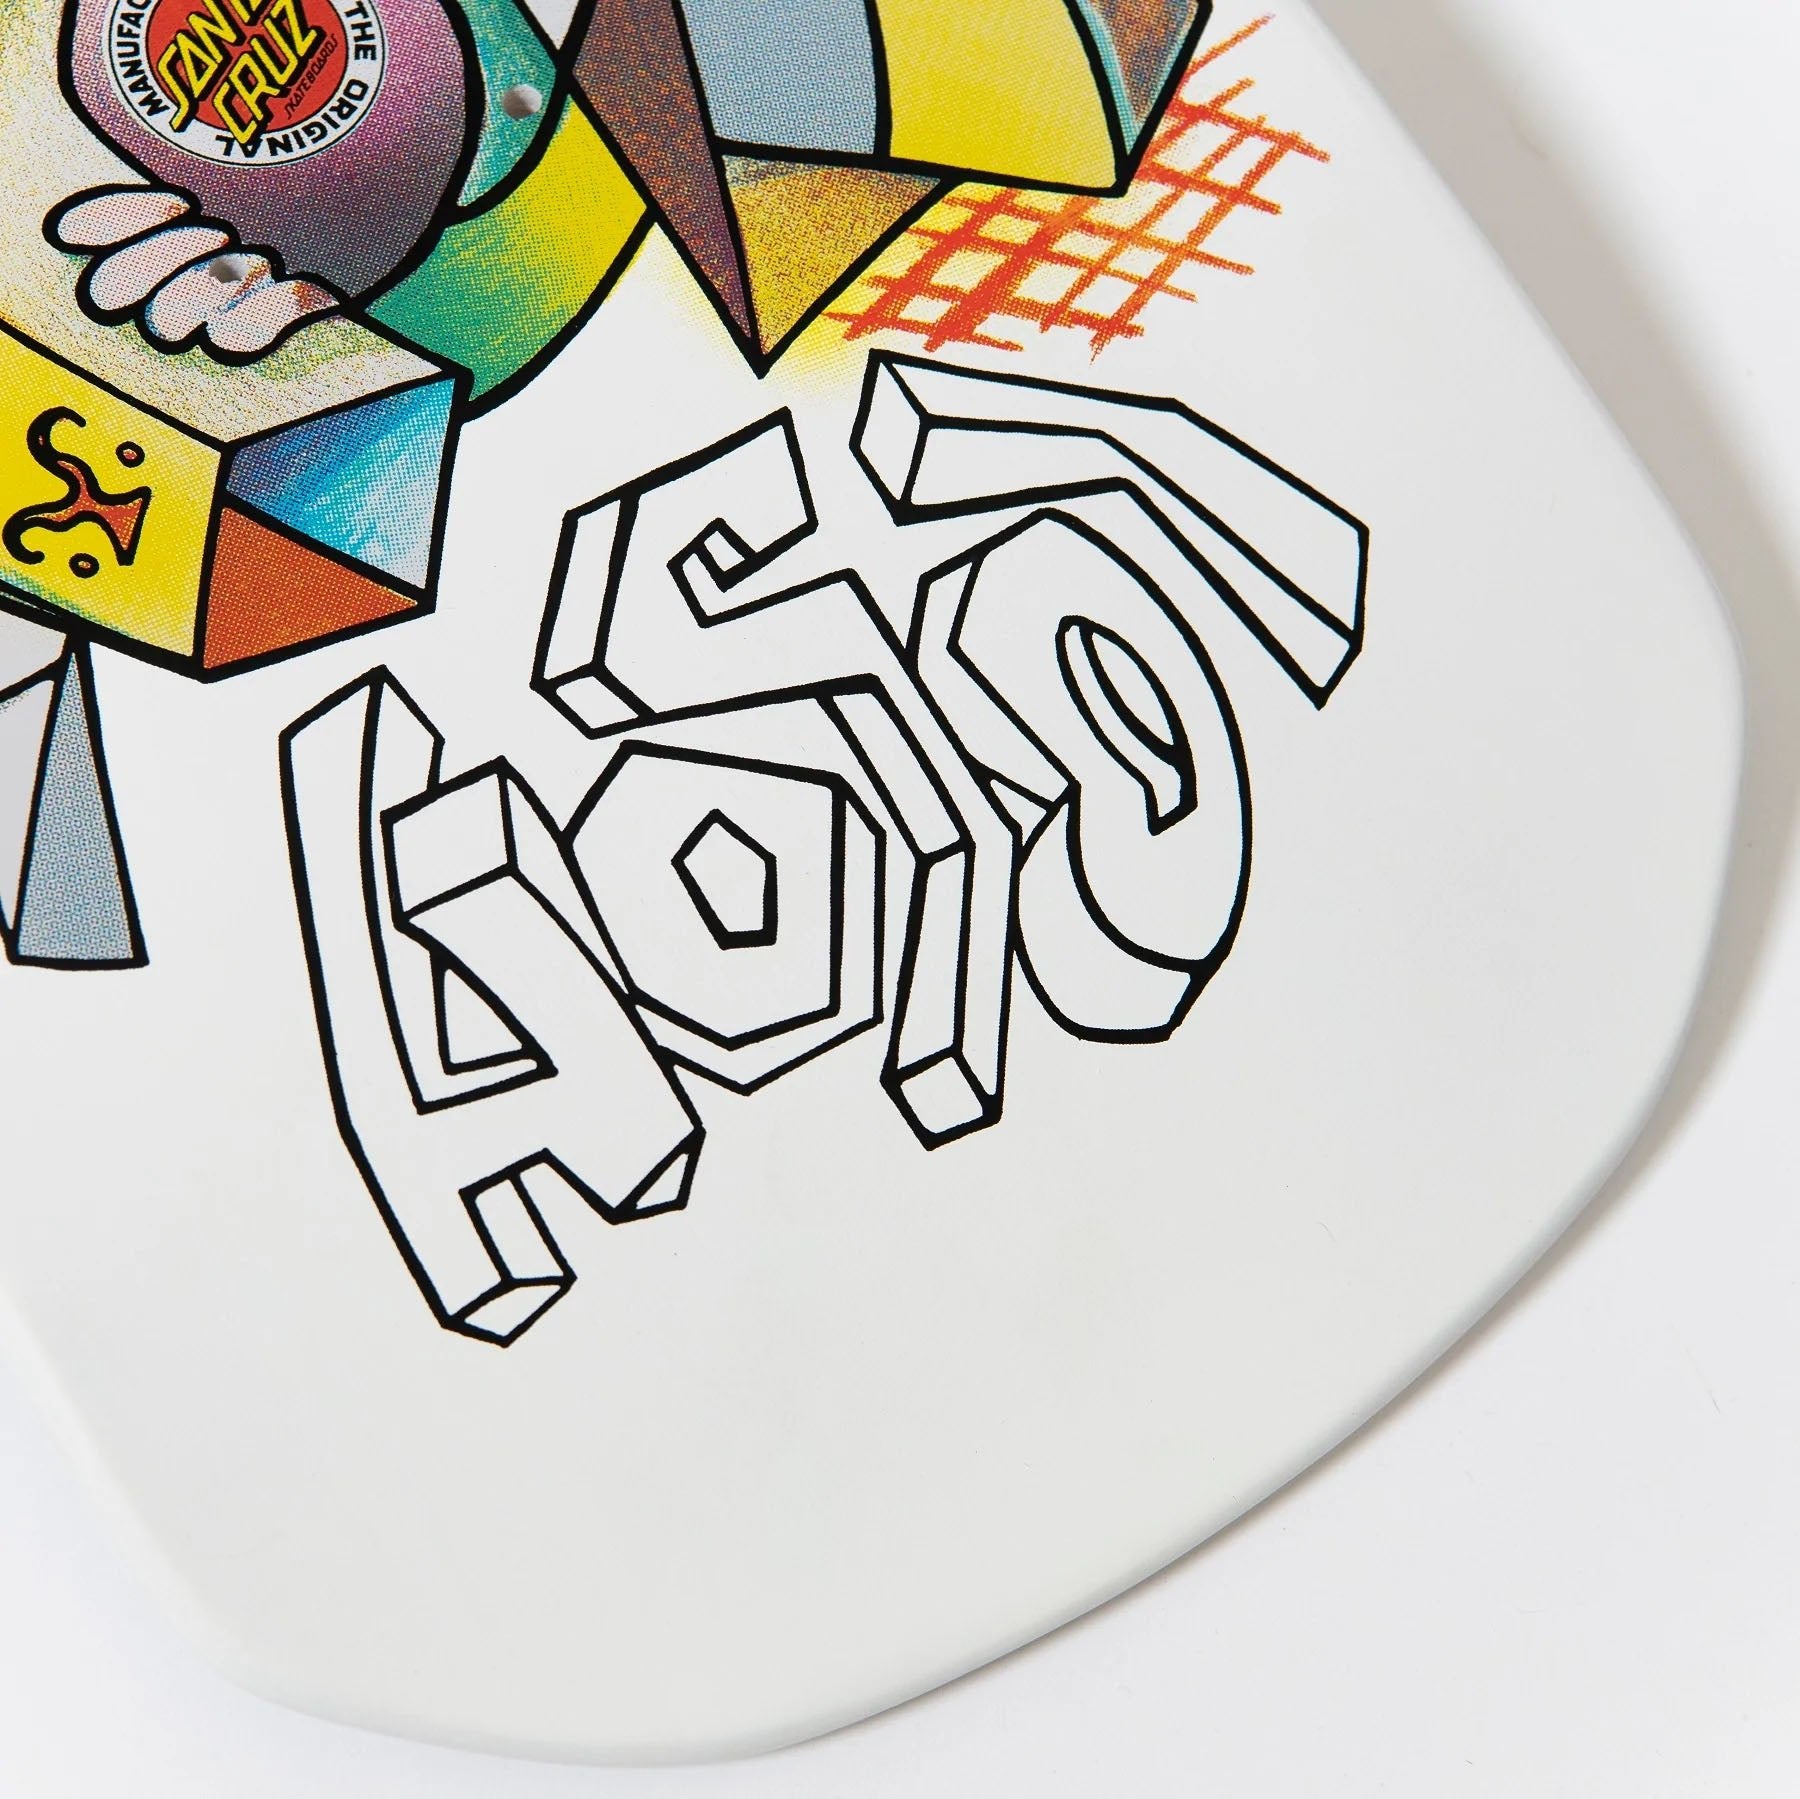 Santa Cruz Hosoi Picasso Reissue Deck (10.26" X 30.42") - Tiki Room Skateboards - 5